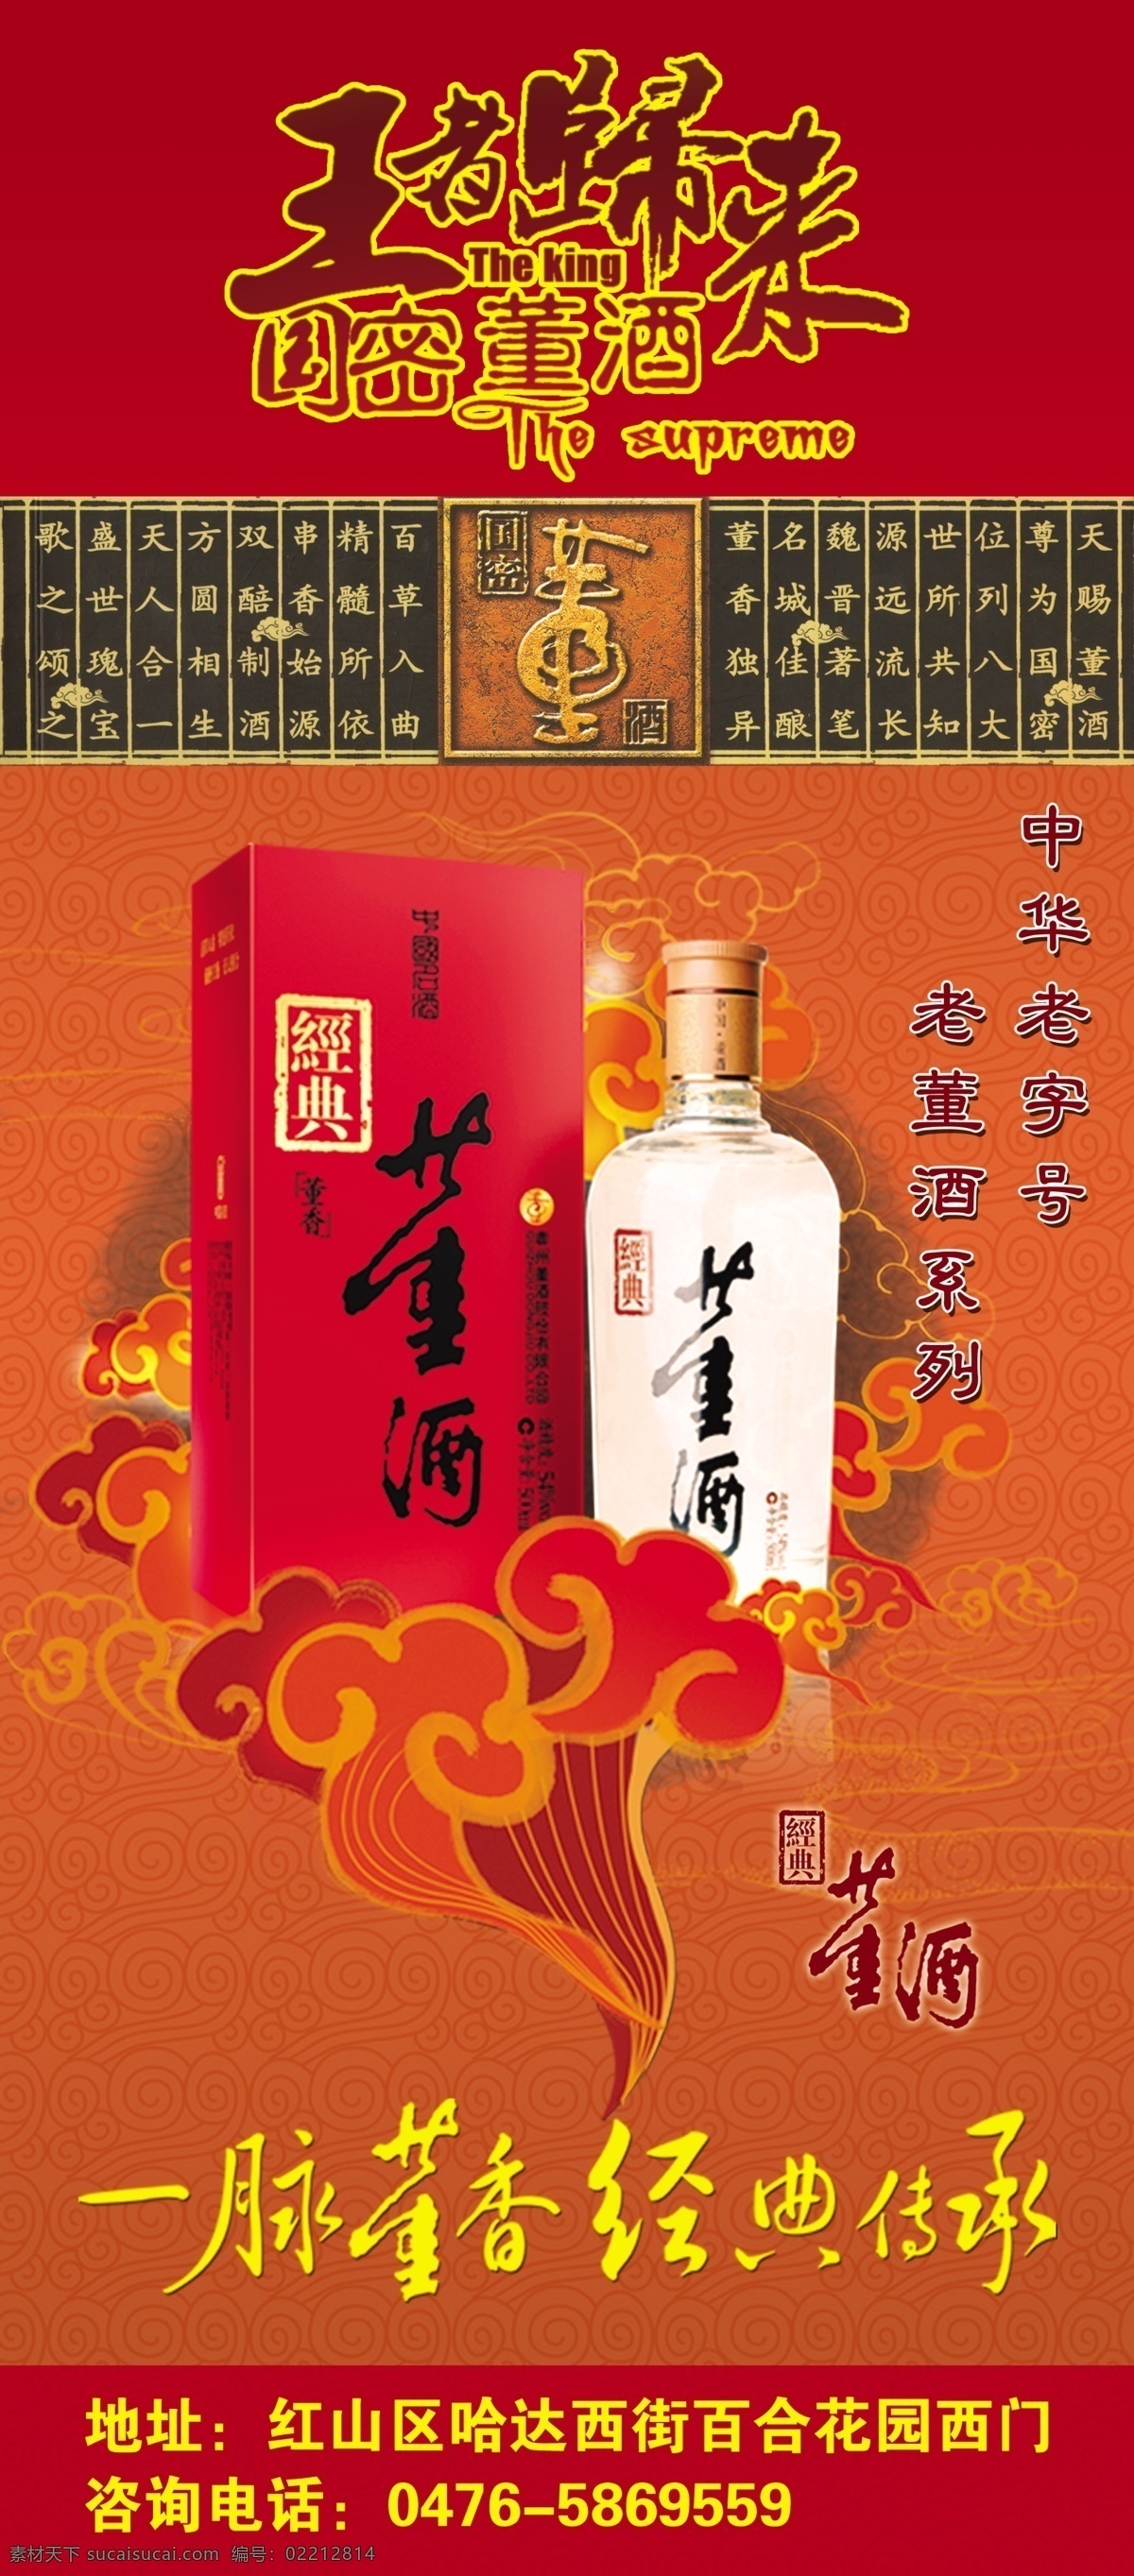 中国 董酒 广告设计模板 源文件 中国董酒 董酒展架 国密品质 经典传承 王者归来 其他海报设计